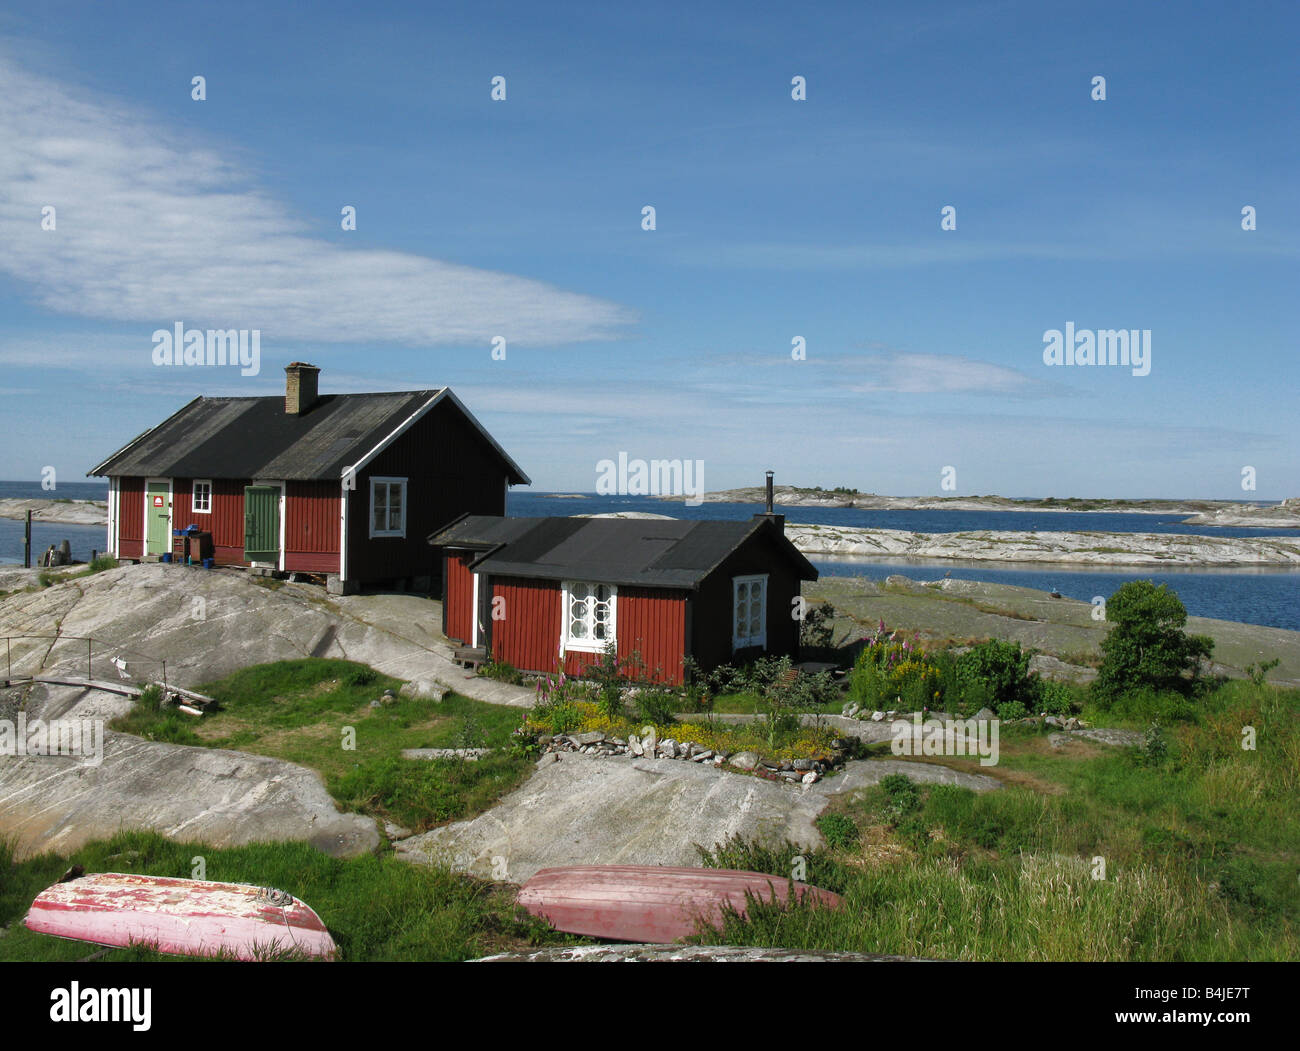 Ferienhaus auf einer Insel in den Stockholmer Schären Stockfoto